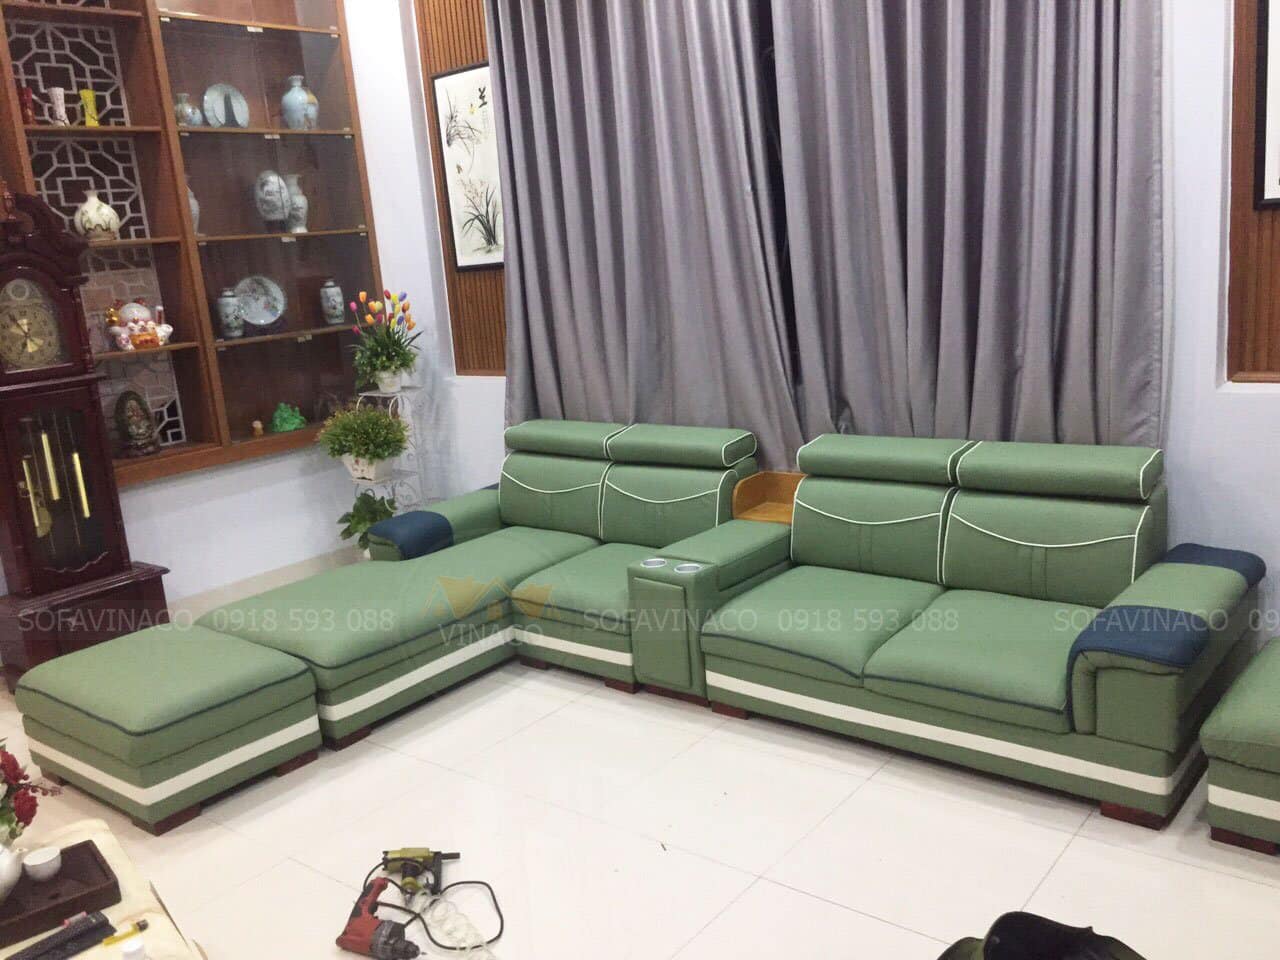 Thay bọc ghế sofa cho khách hàng tại Đồng Nai